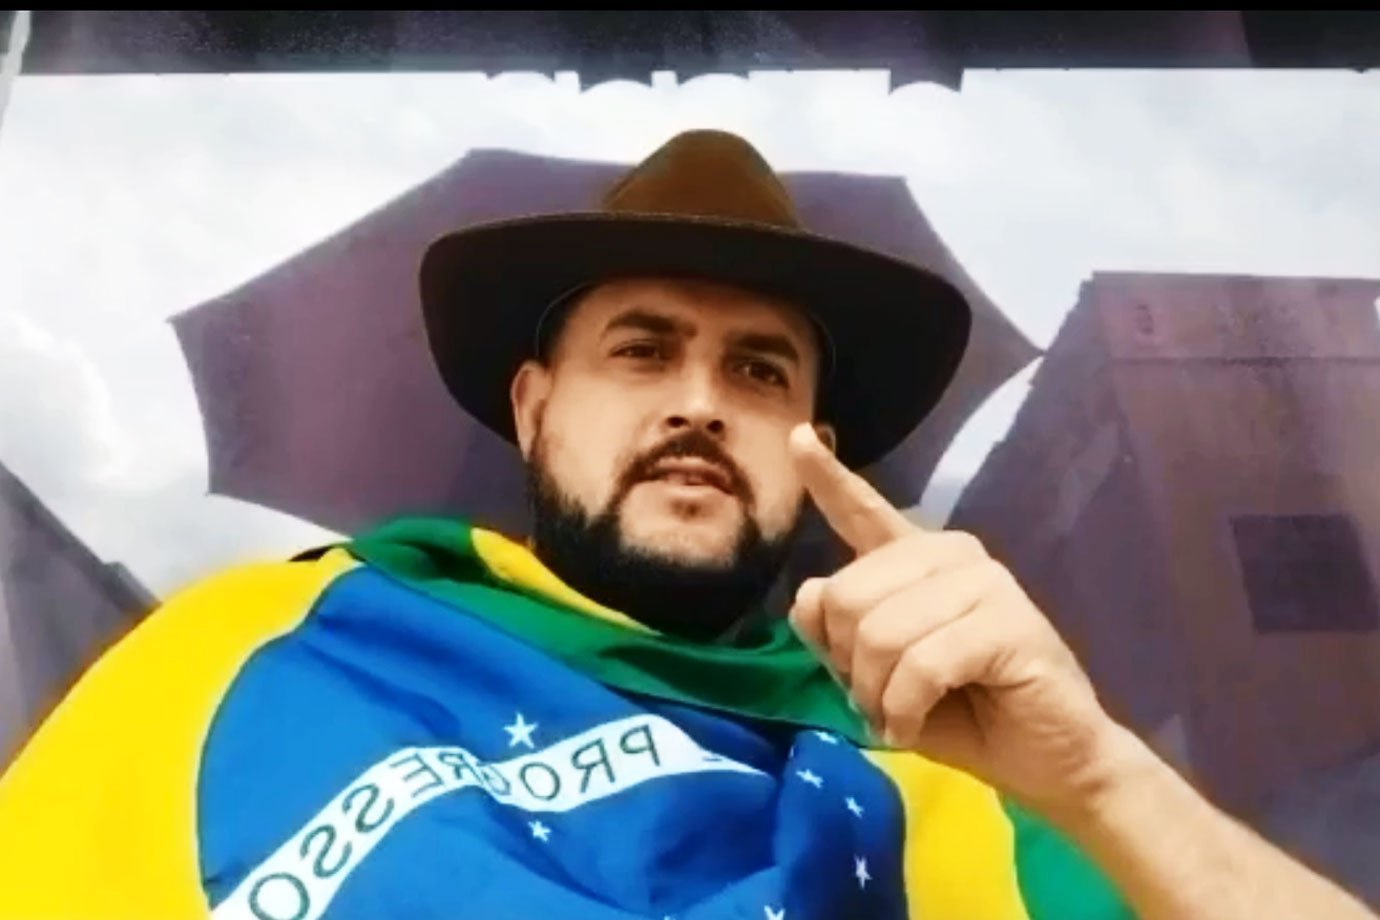 Zé Trovão busca refugio en México con el pretexto de persecución política en Brasil